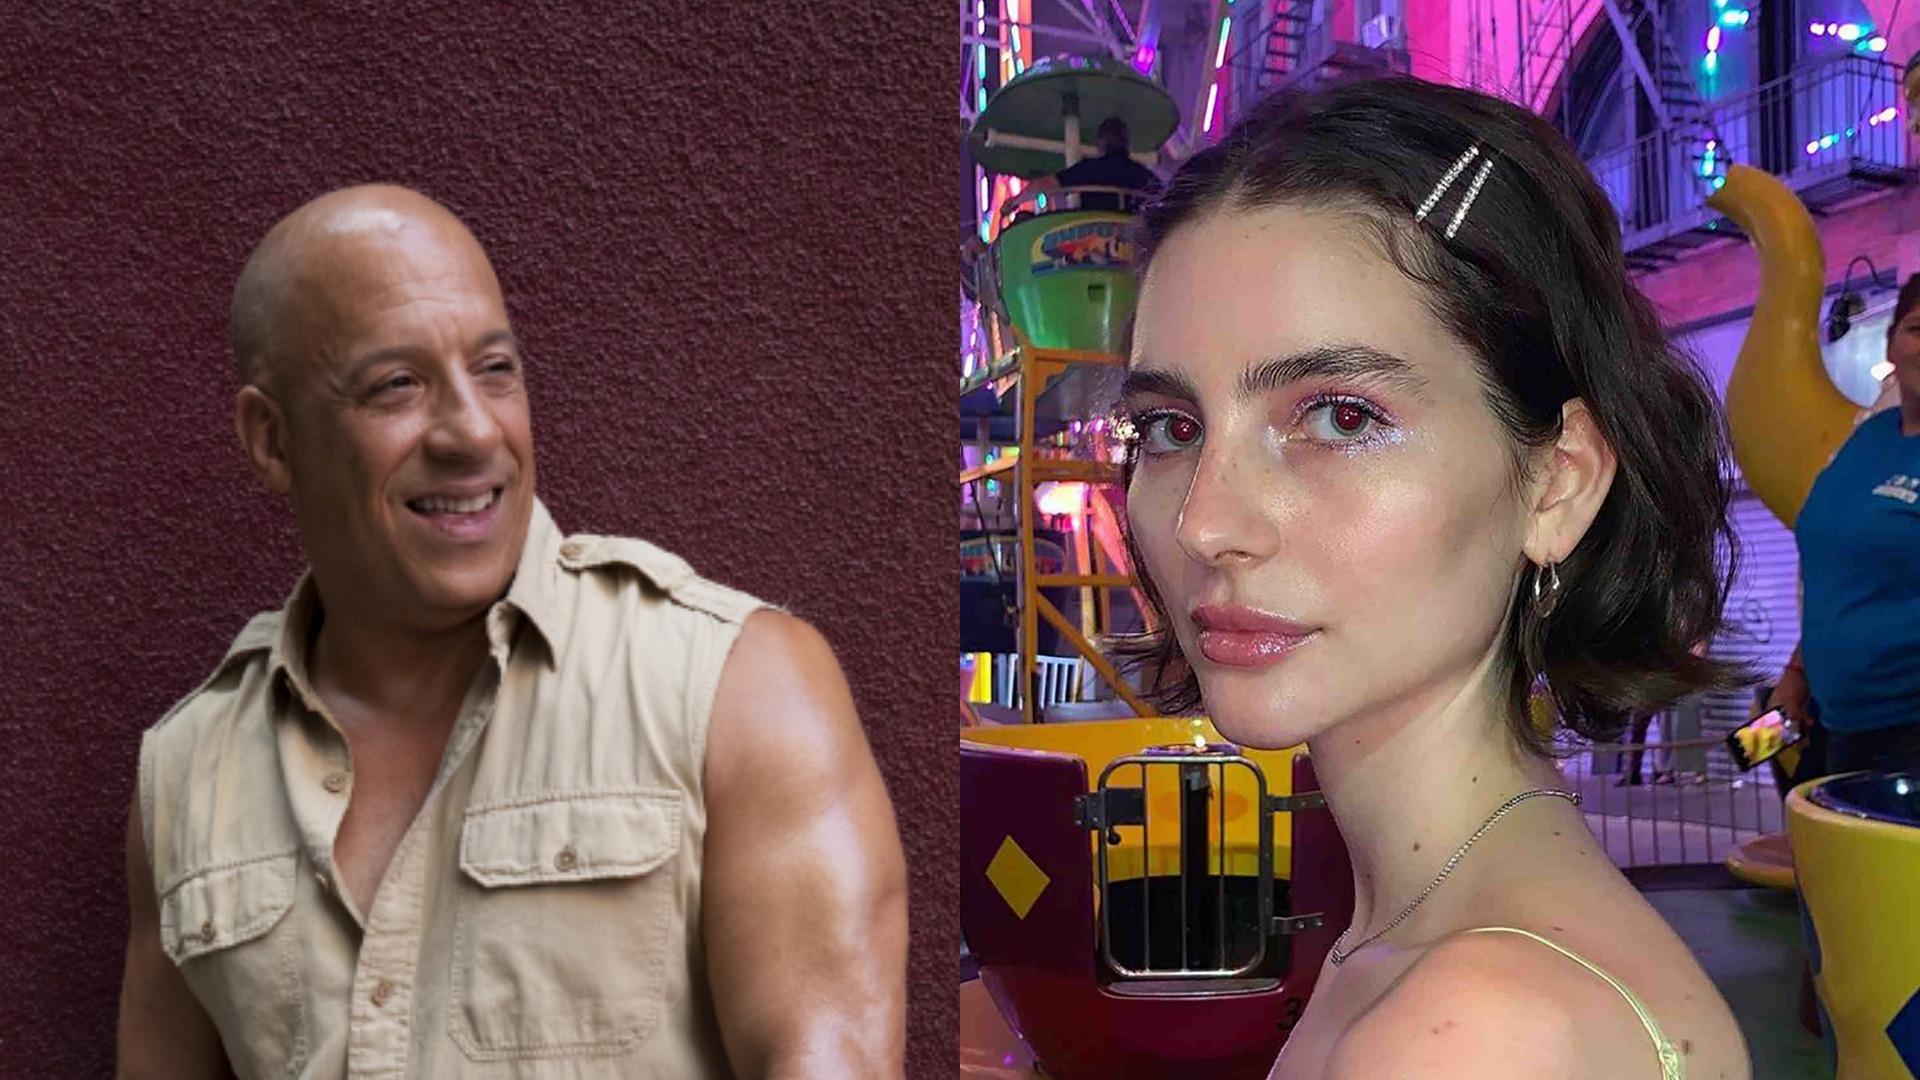 Transformator Harmonie Transplanteren Mooi: Vin Diesel loopt dochter Paul Walker naar altaar | Veronica Superguide